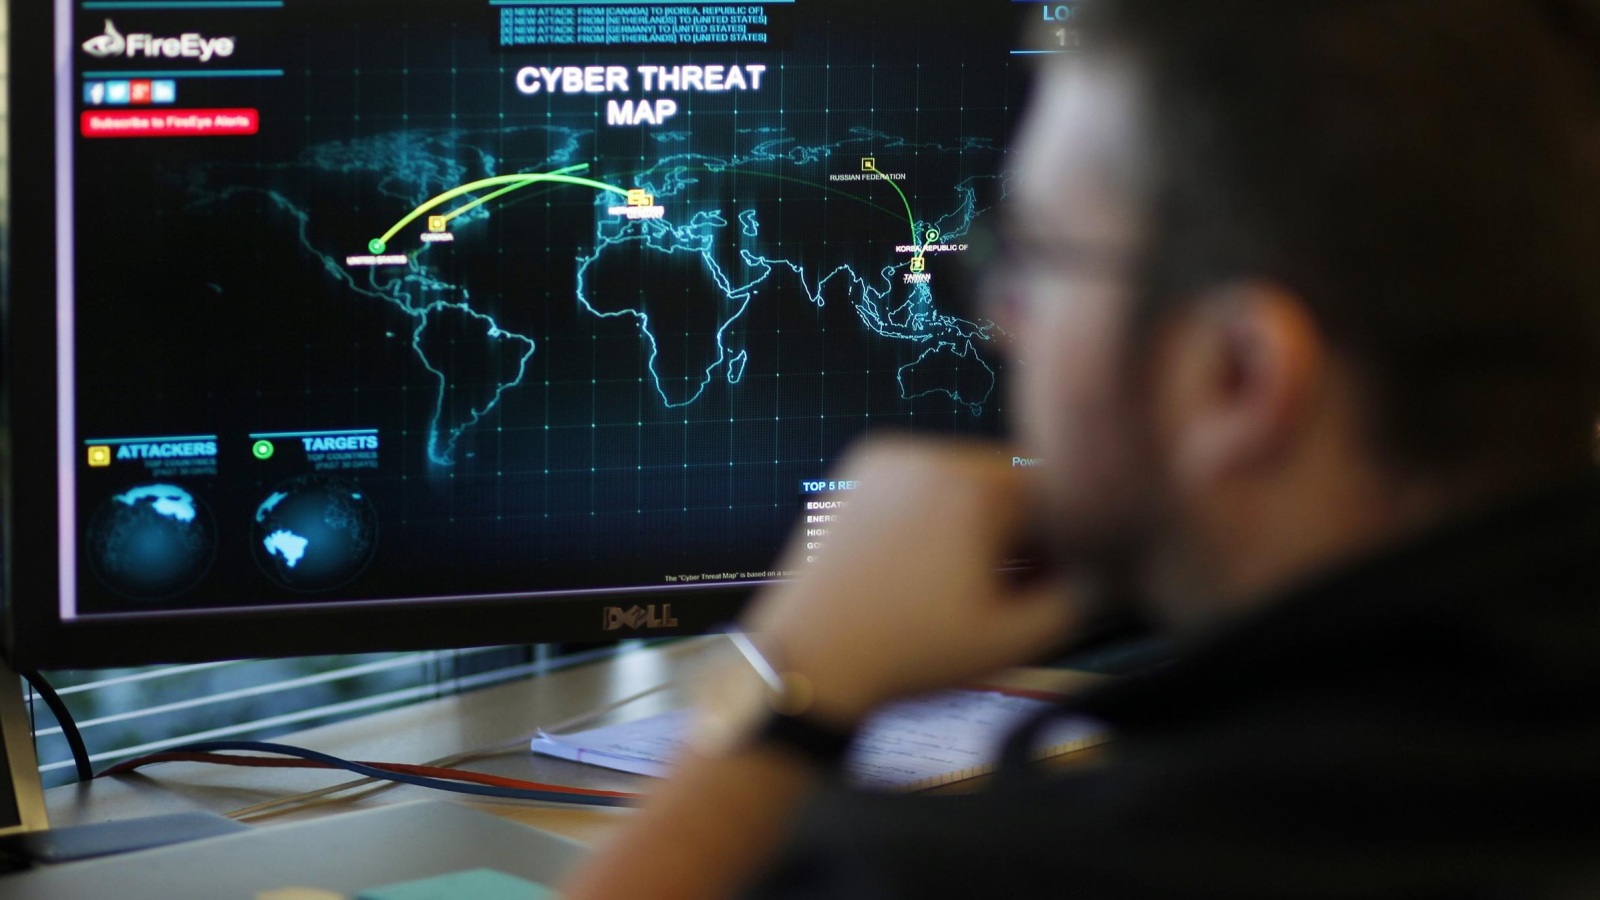 مهندس أمام شاشة تعرض خريطة بالتهديدات الإلكترونية عبر العالم (رويترز-أرشيف)